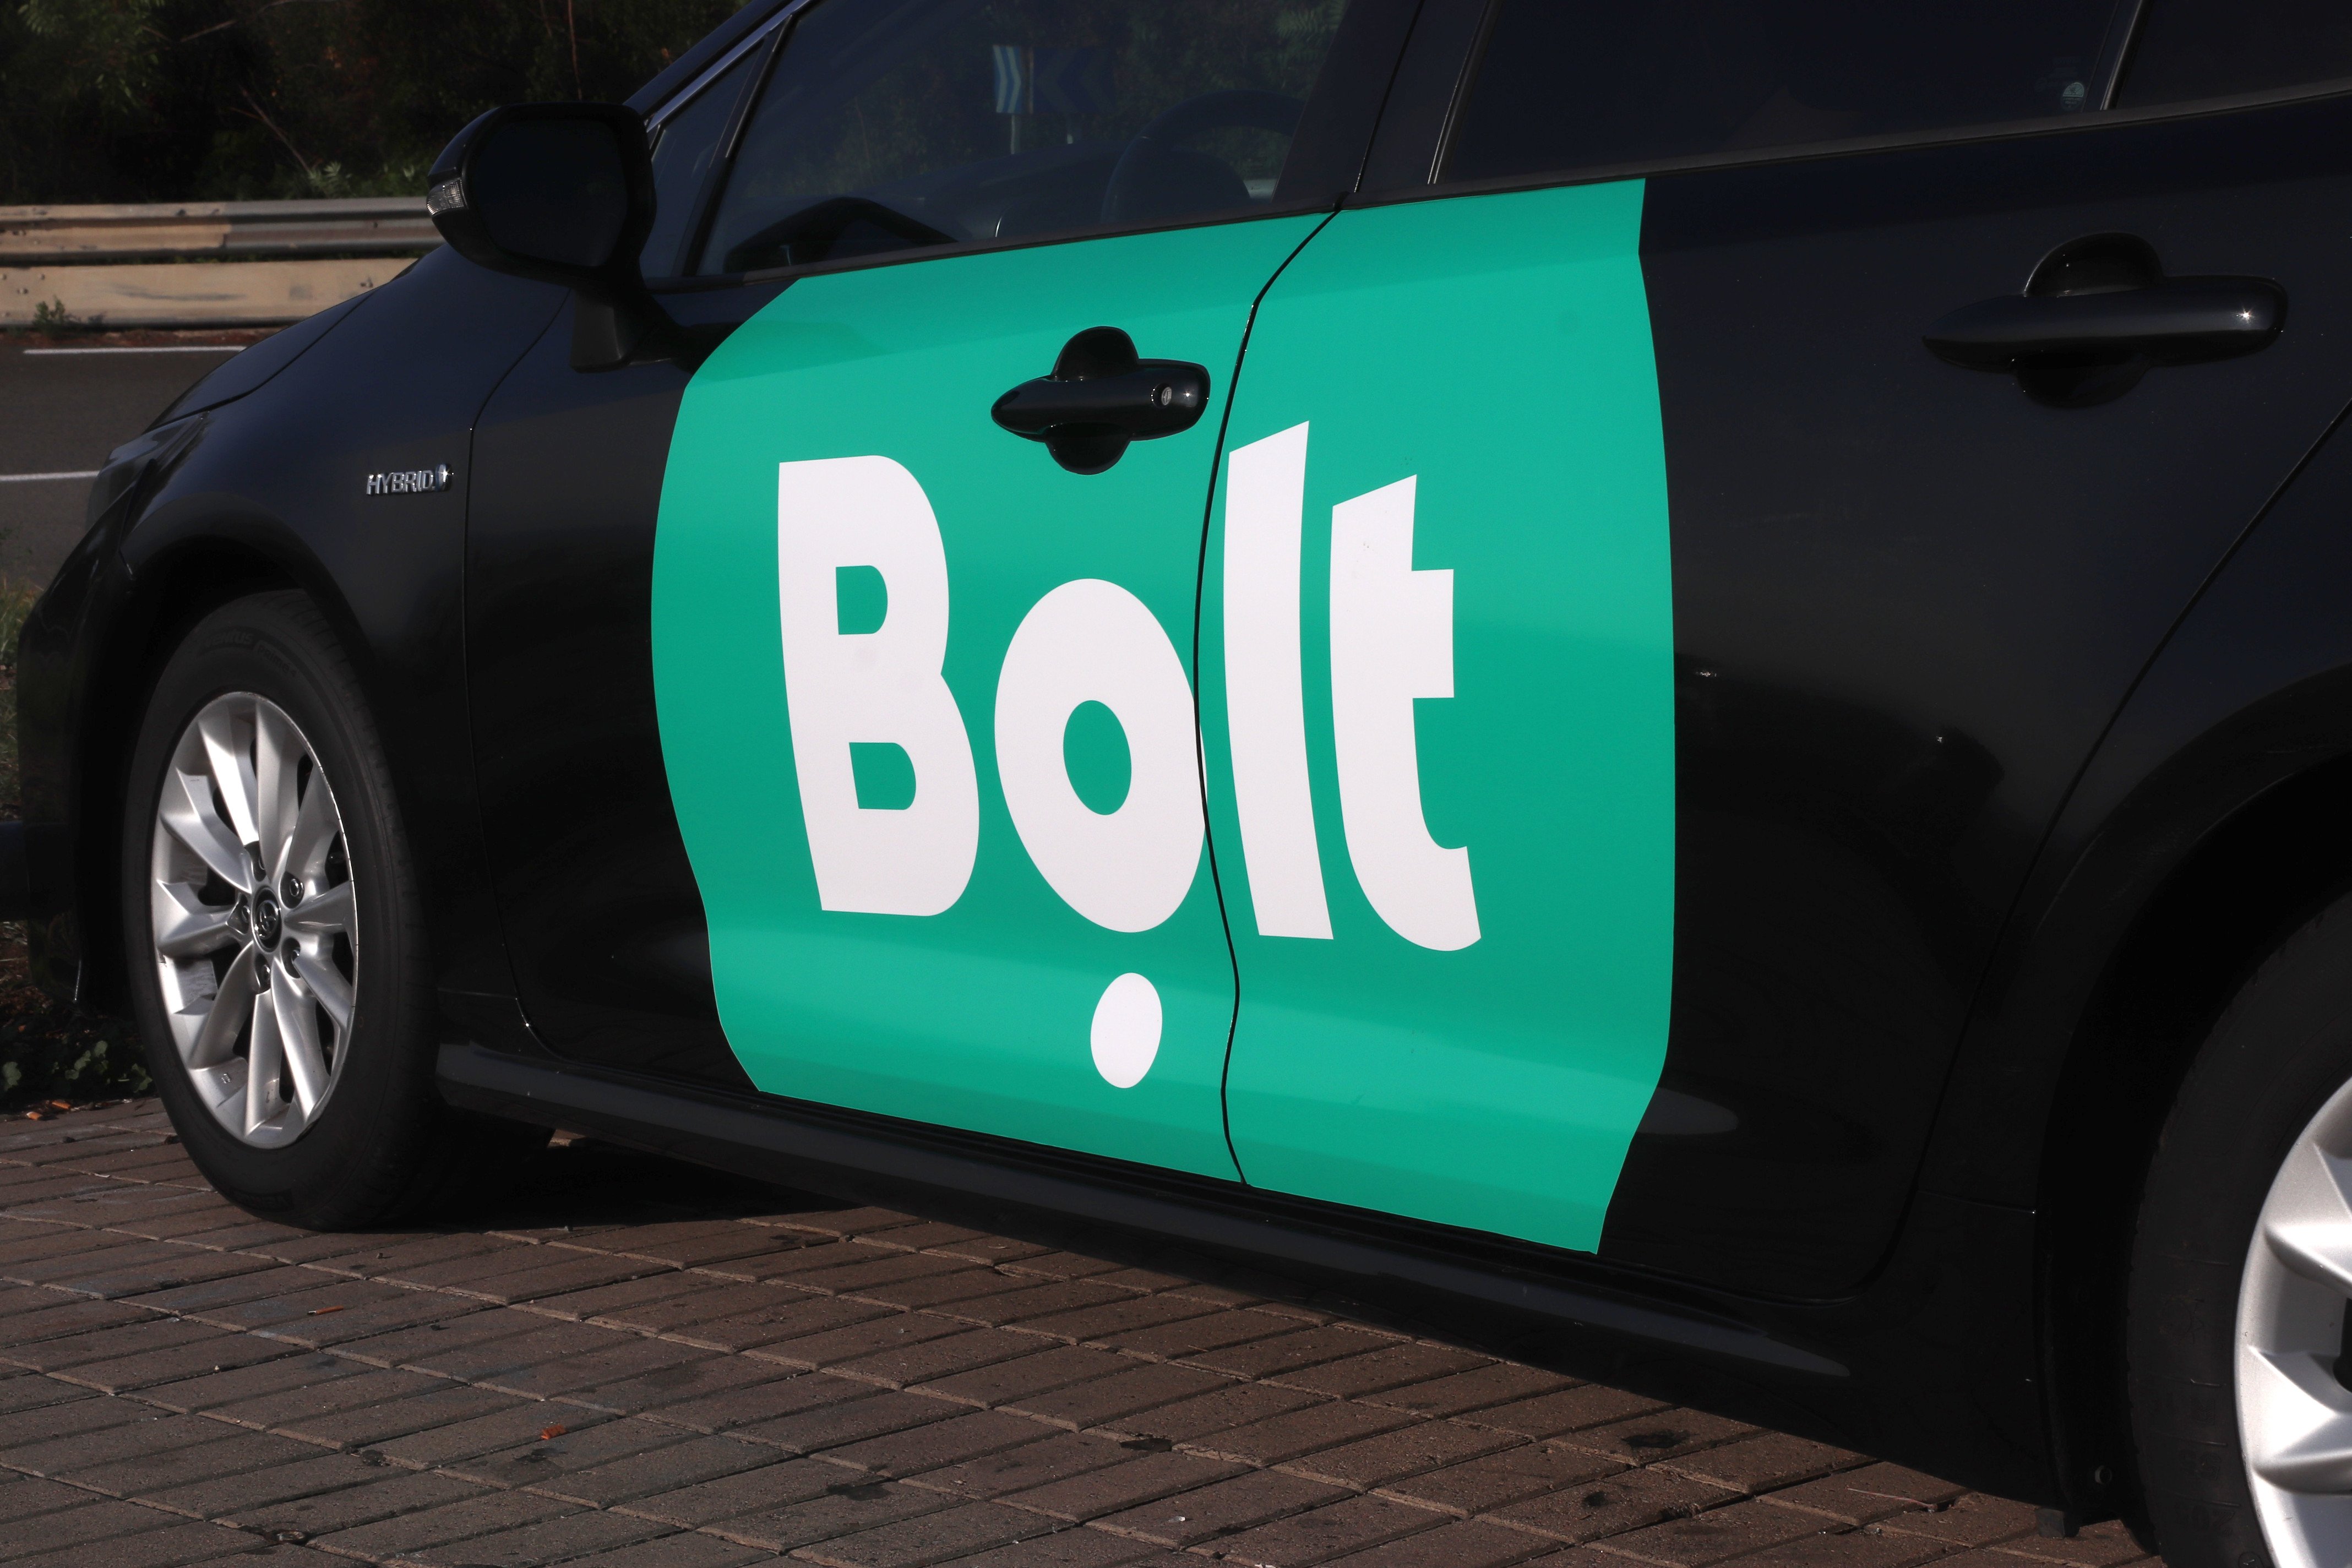 Les VTC contraprogramen la mobilització del taxi: Bolt oferirà viatges de franc